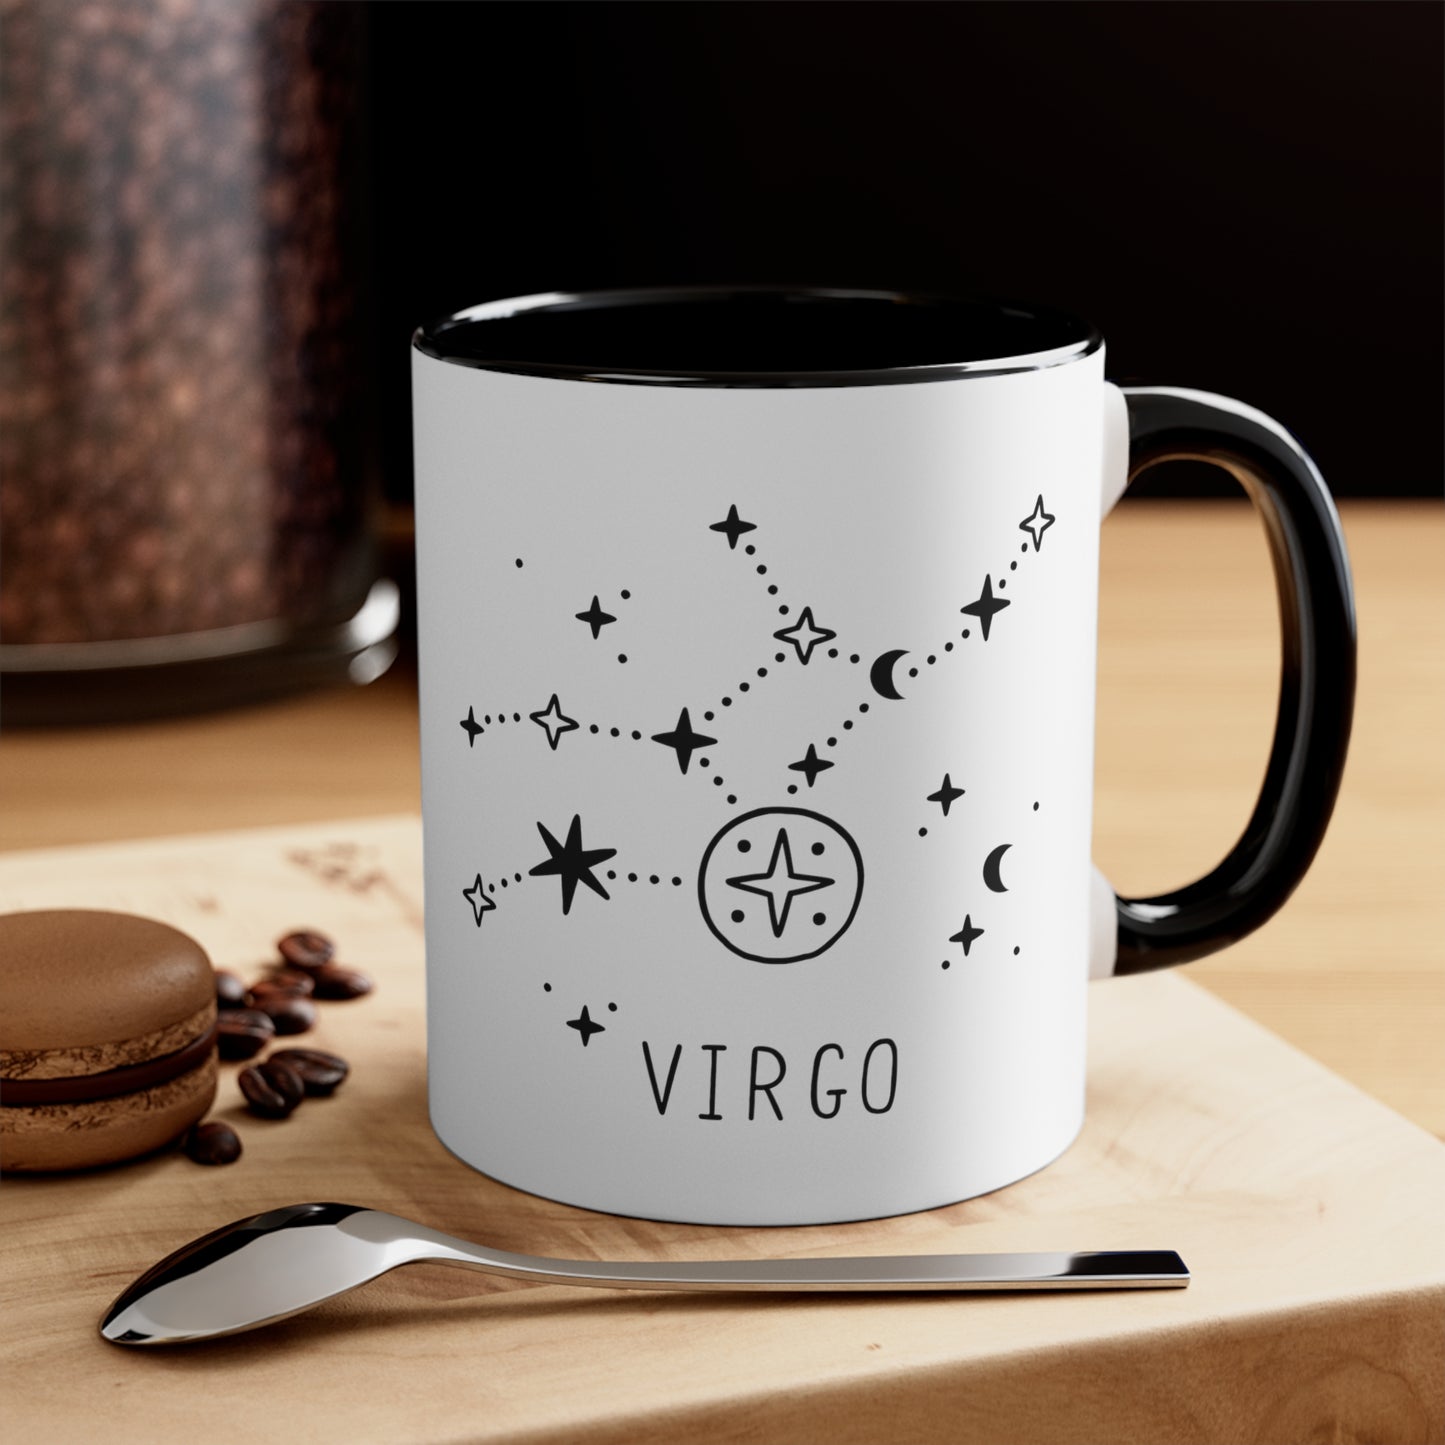 Virgo constellation coffee mug